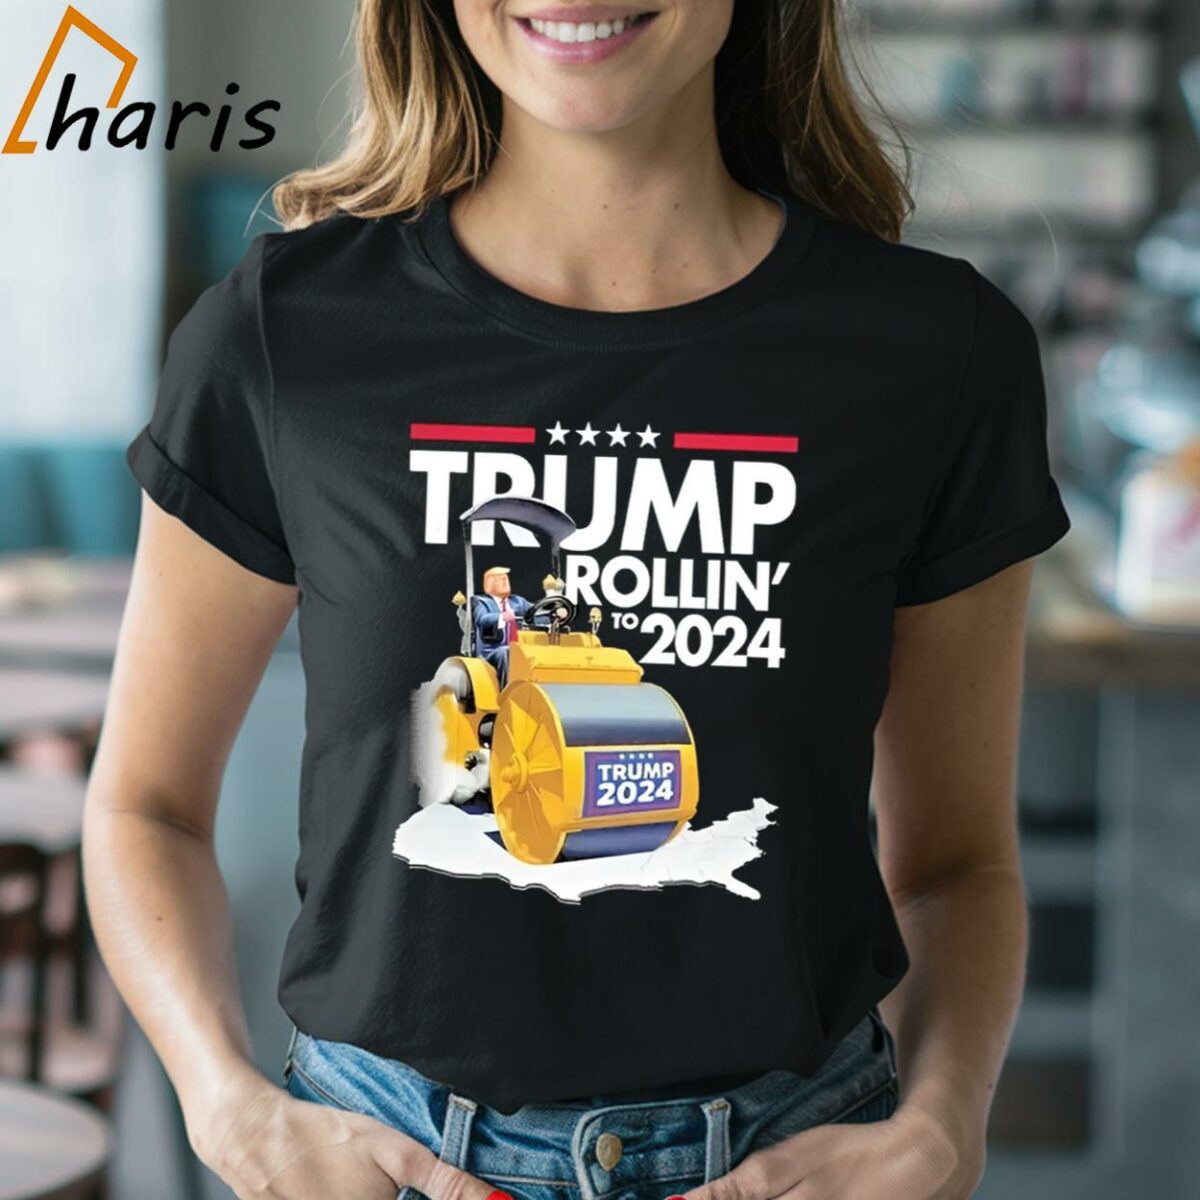 Trump Rollins 10 2024 Shirt 2 Shirt